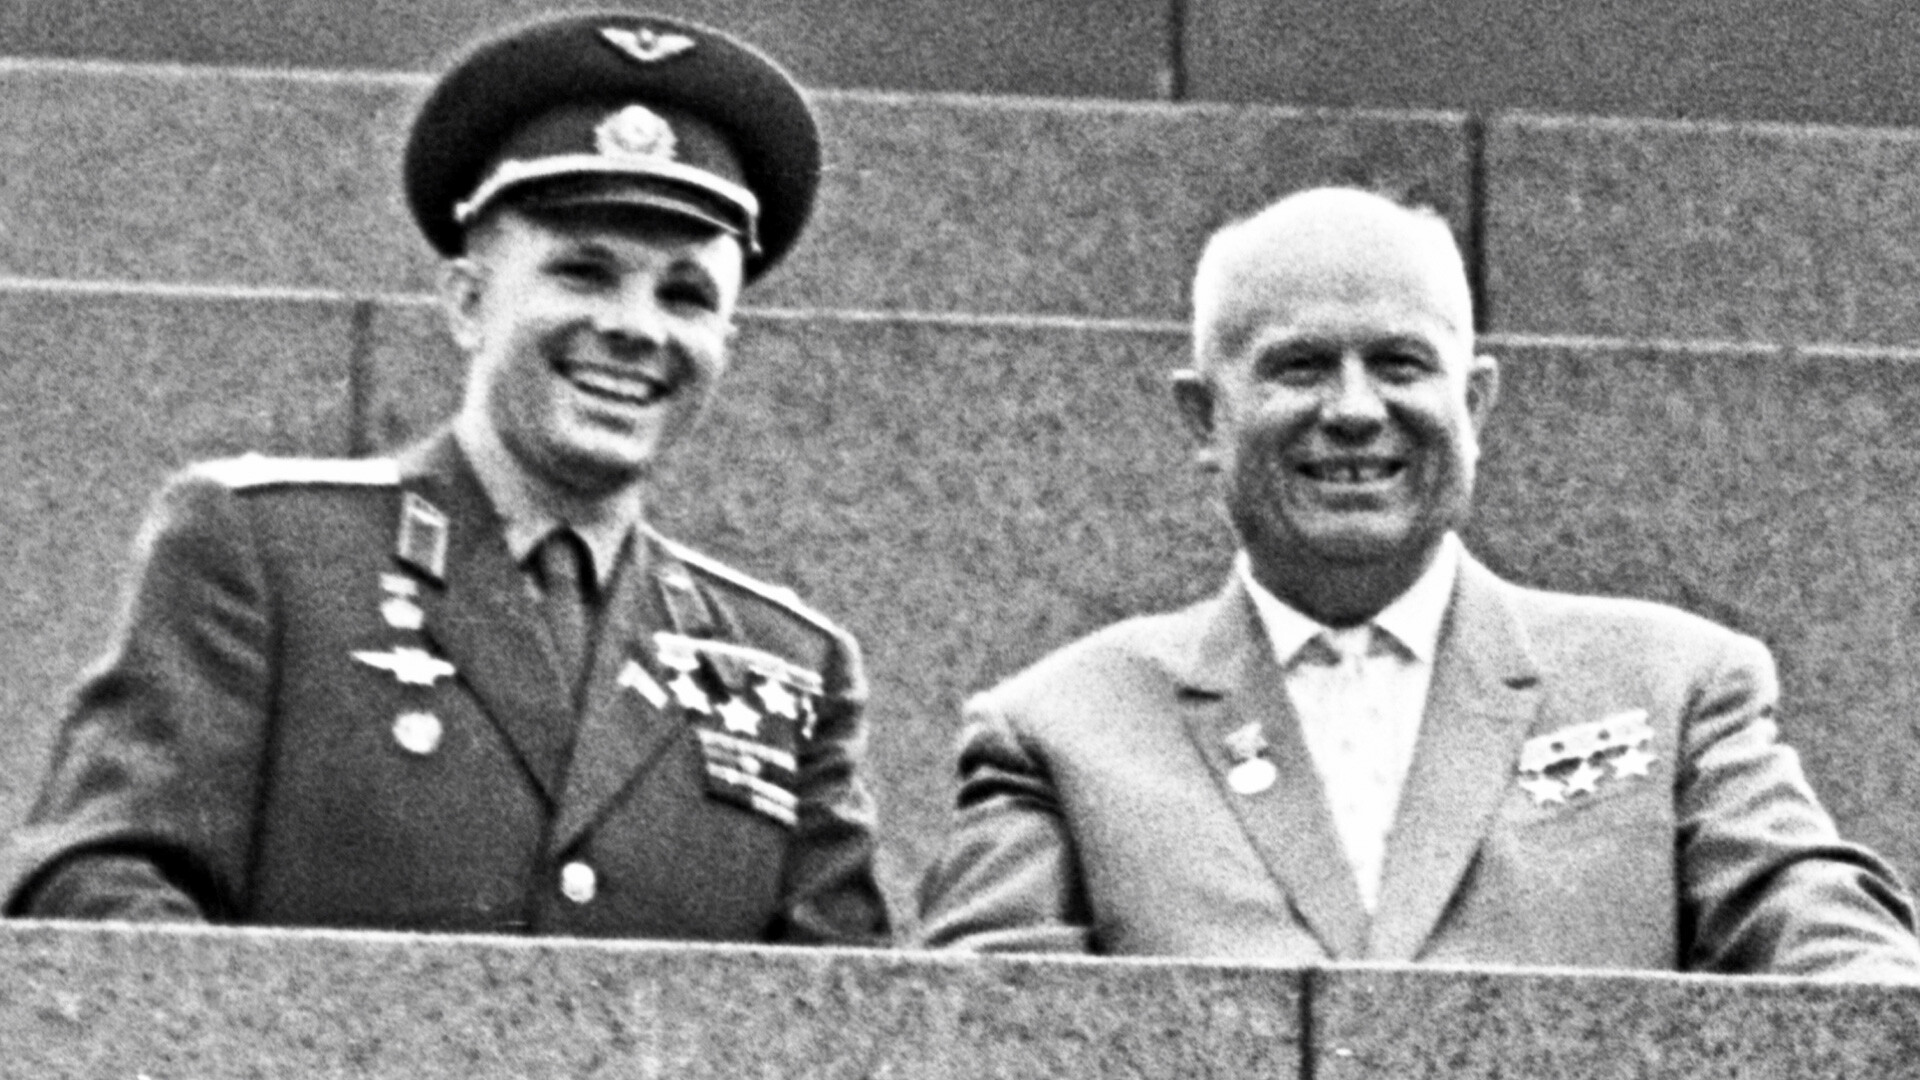 Yury Gagarin and Nikita Khrushchev